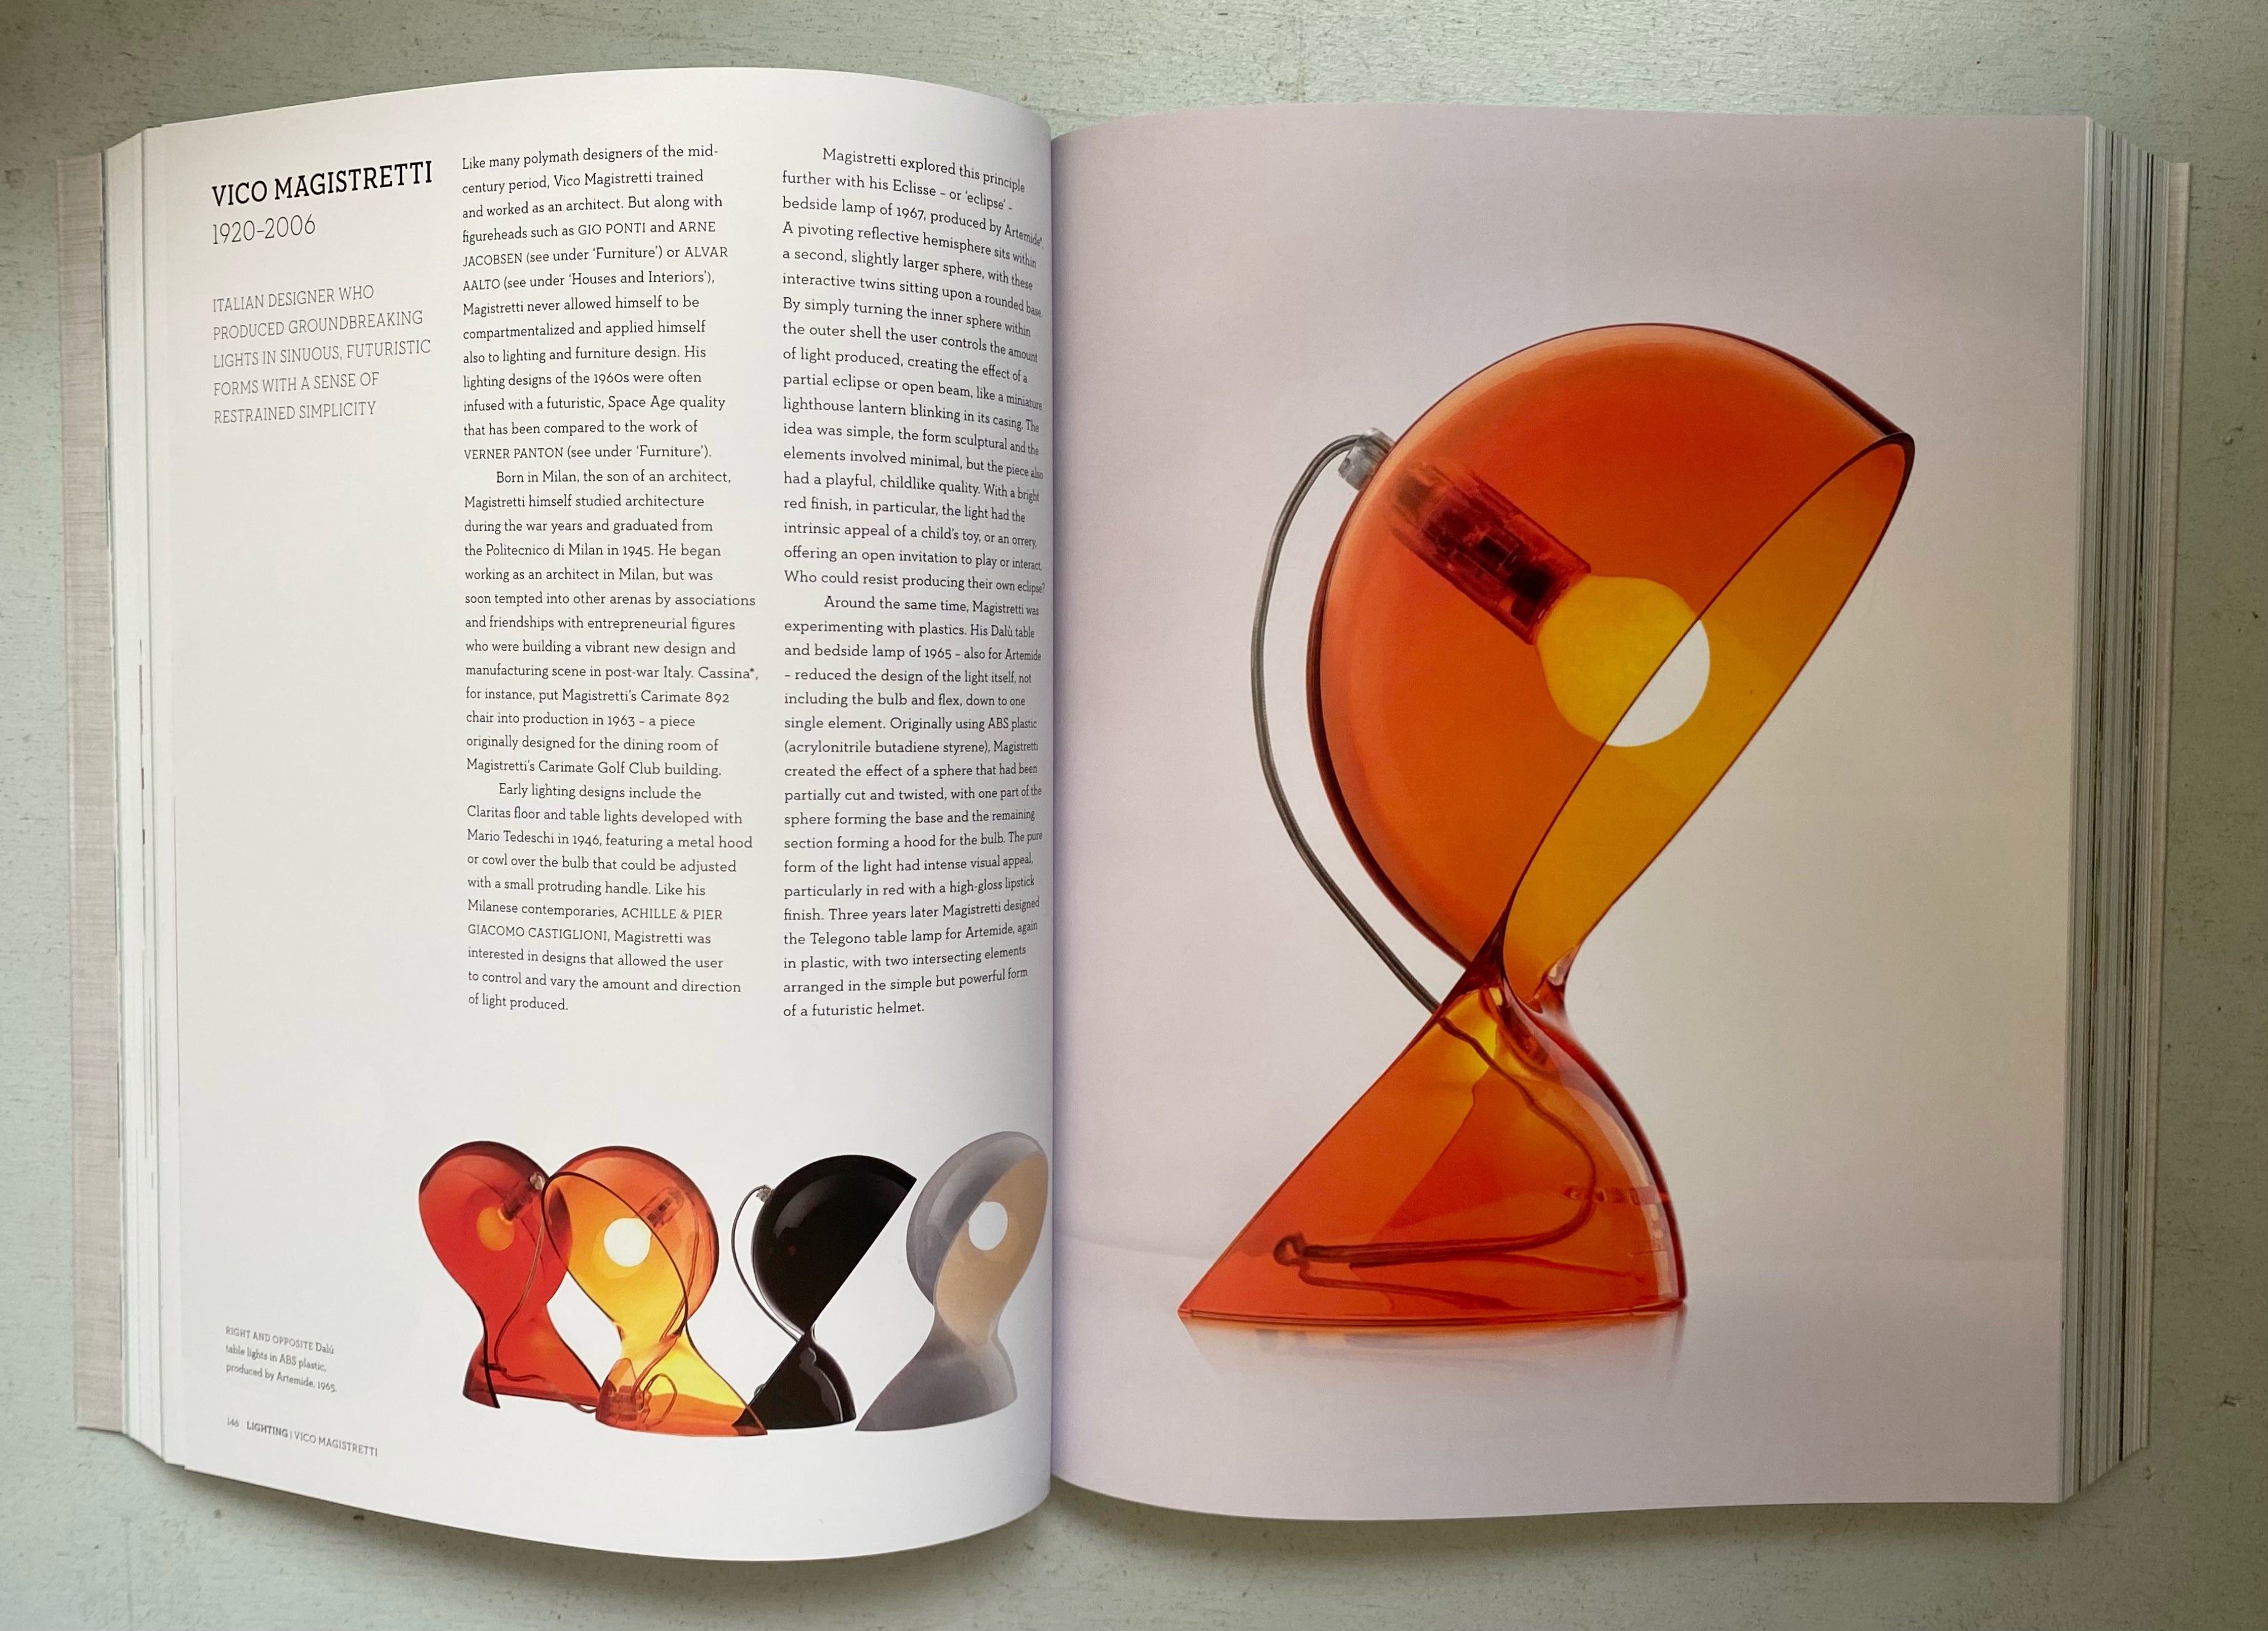 Mid-Century Modern Design - A complete sourcebook